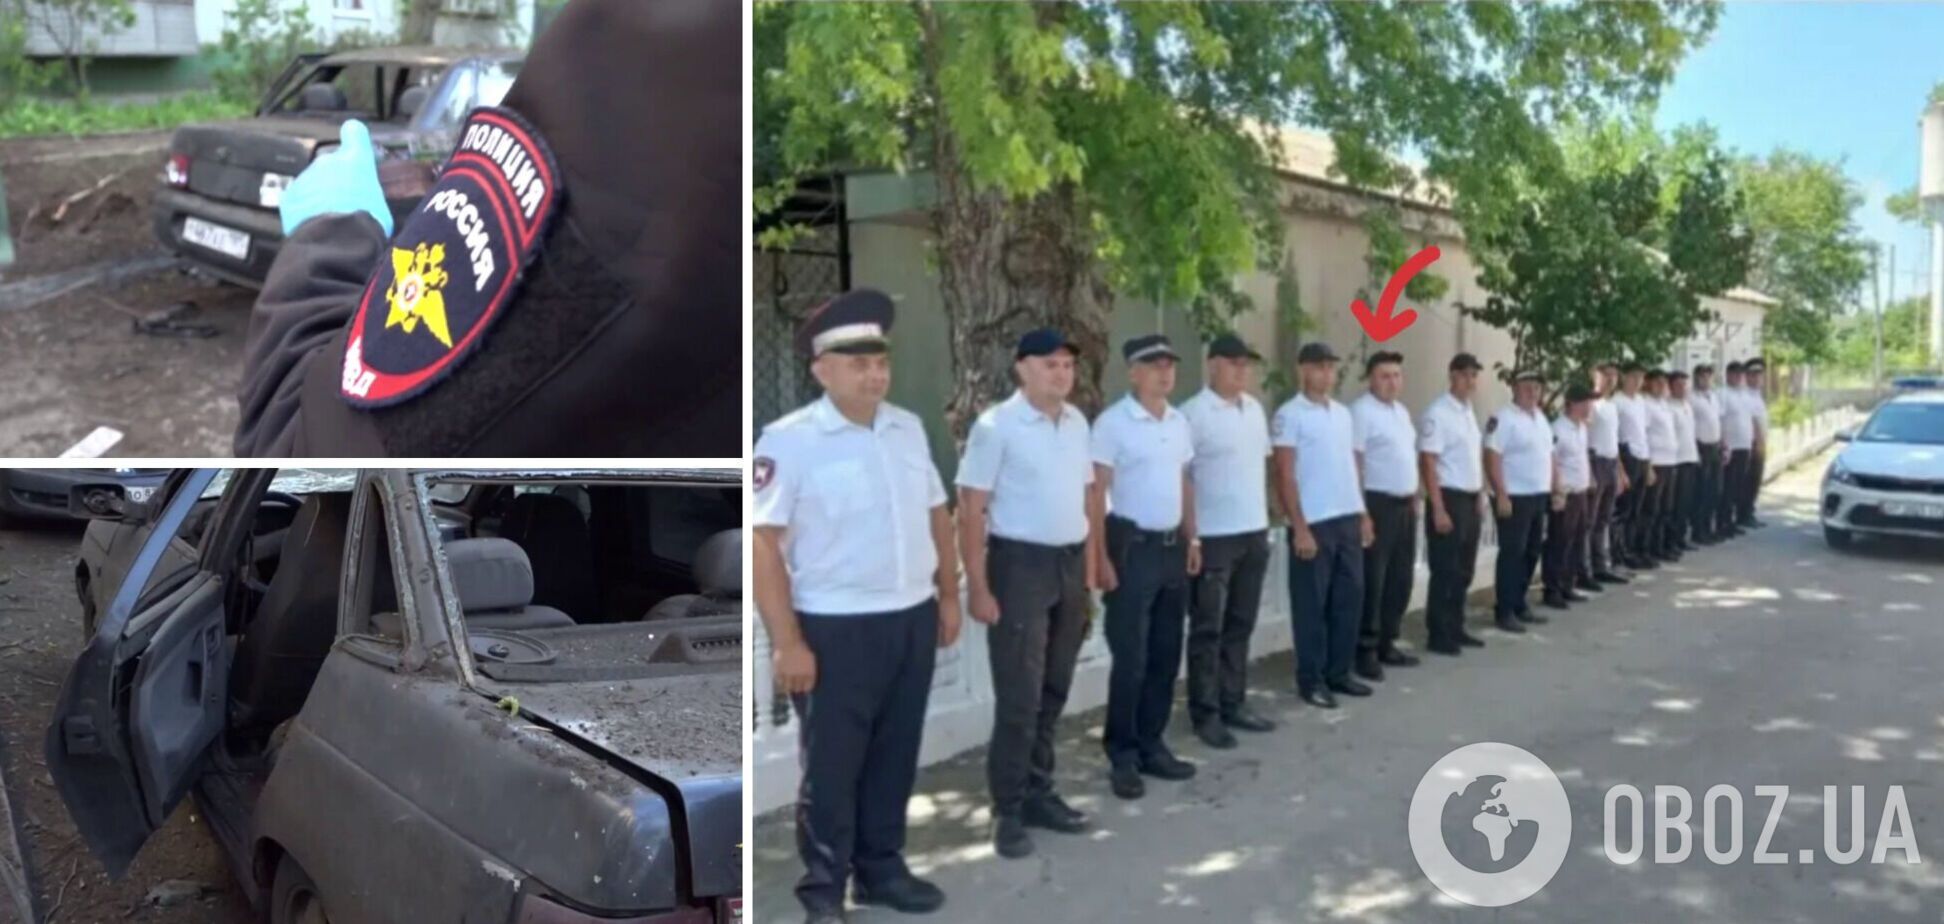 Названо имя второго полицейского-предателя, пострадавшего от взрыва в Мелитополе: получил тяжелые травмы